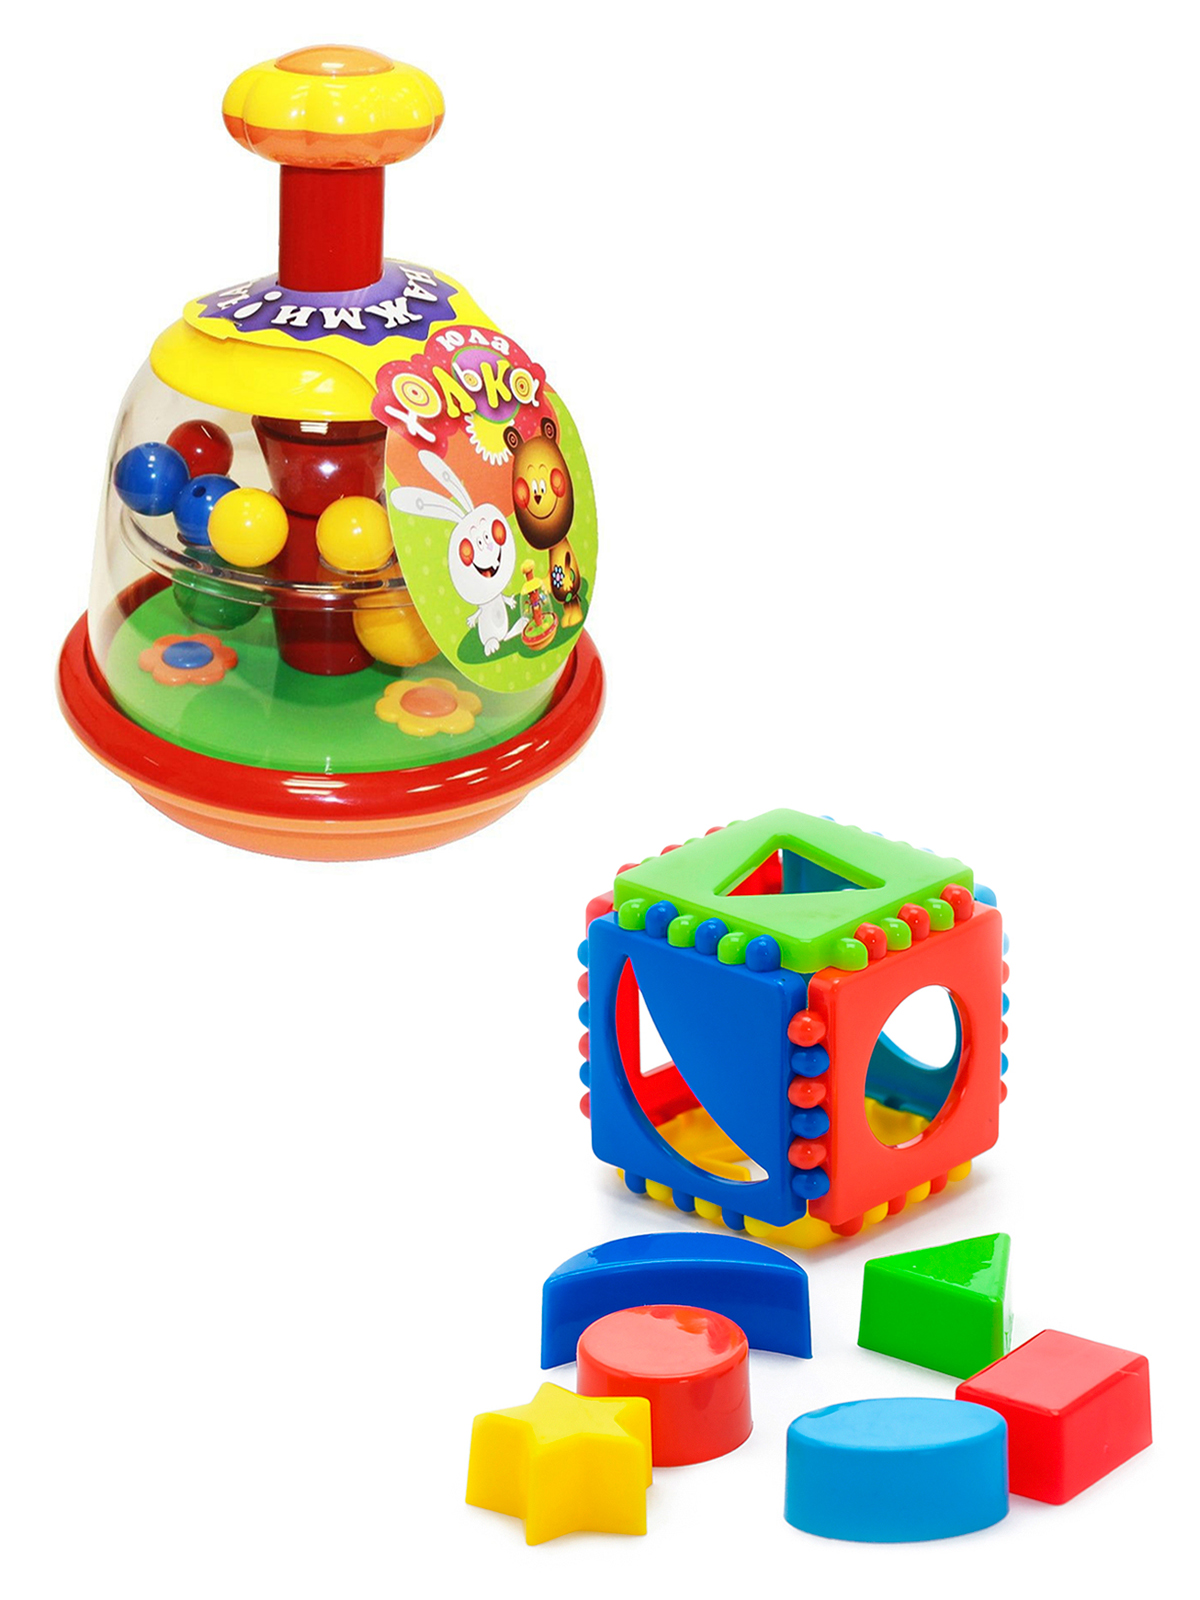 фото Развивающие игрушки биплант юла юлька классические цвета+игрушка кубик логический малый